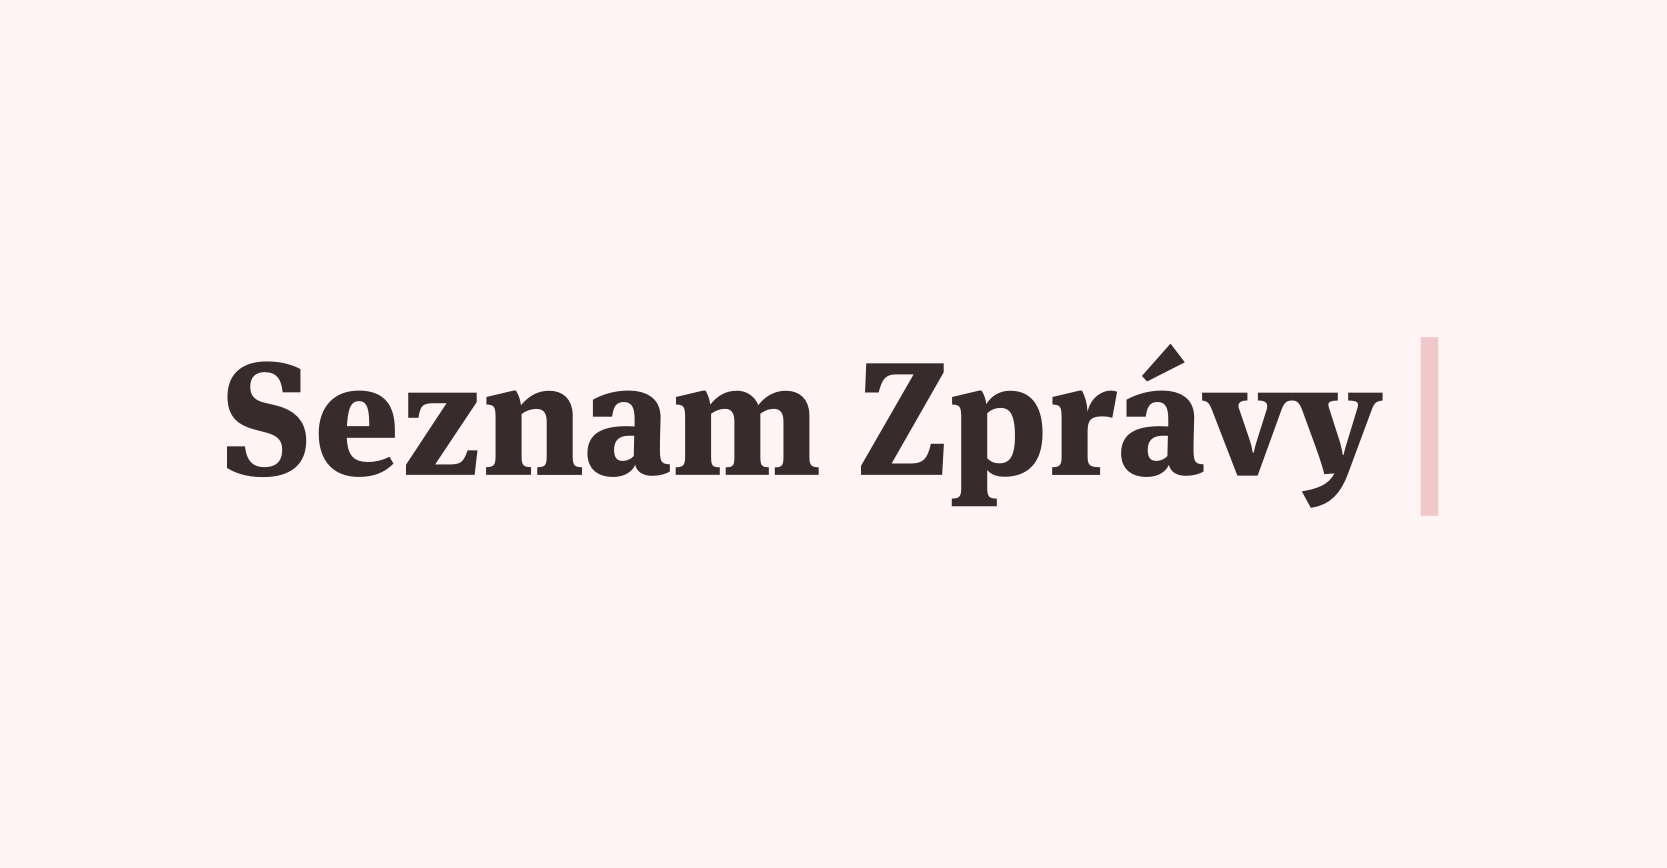 www.seznamzpravy.cz